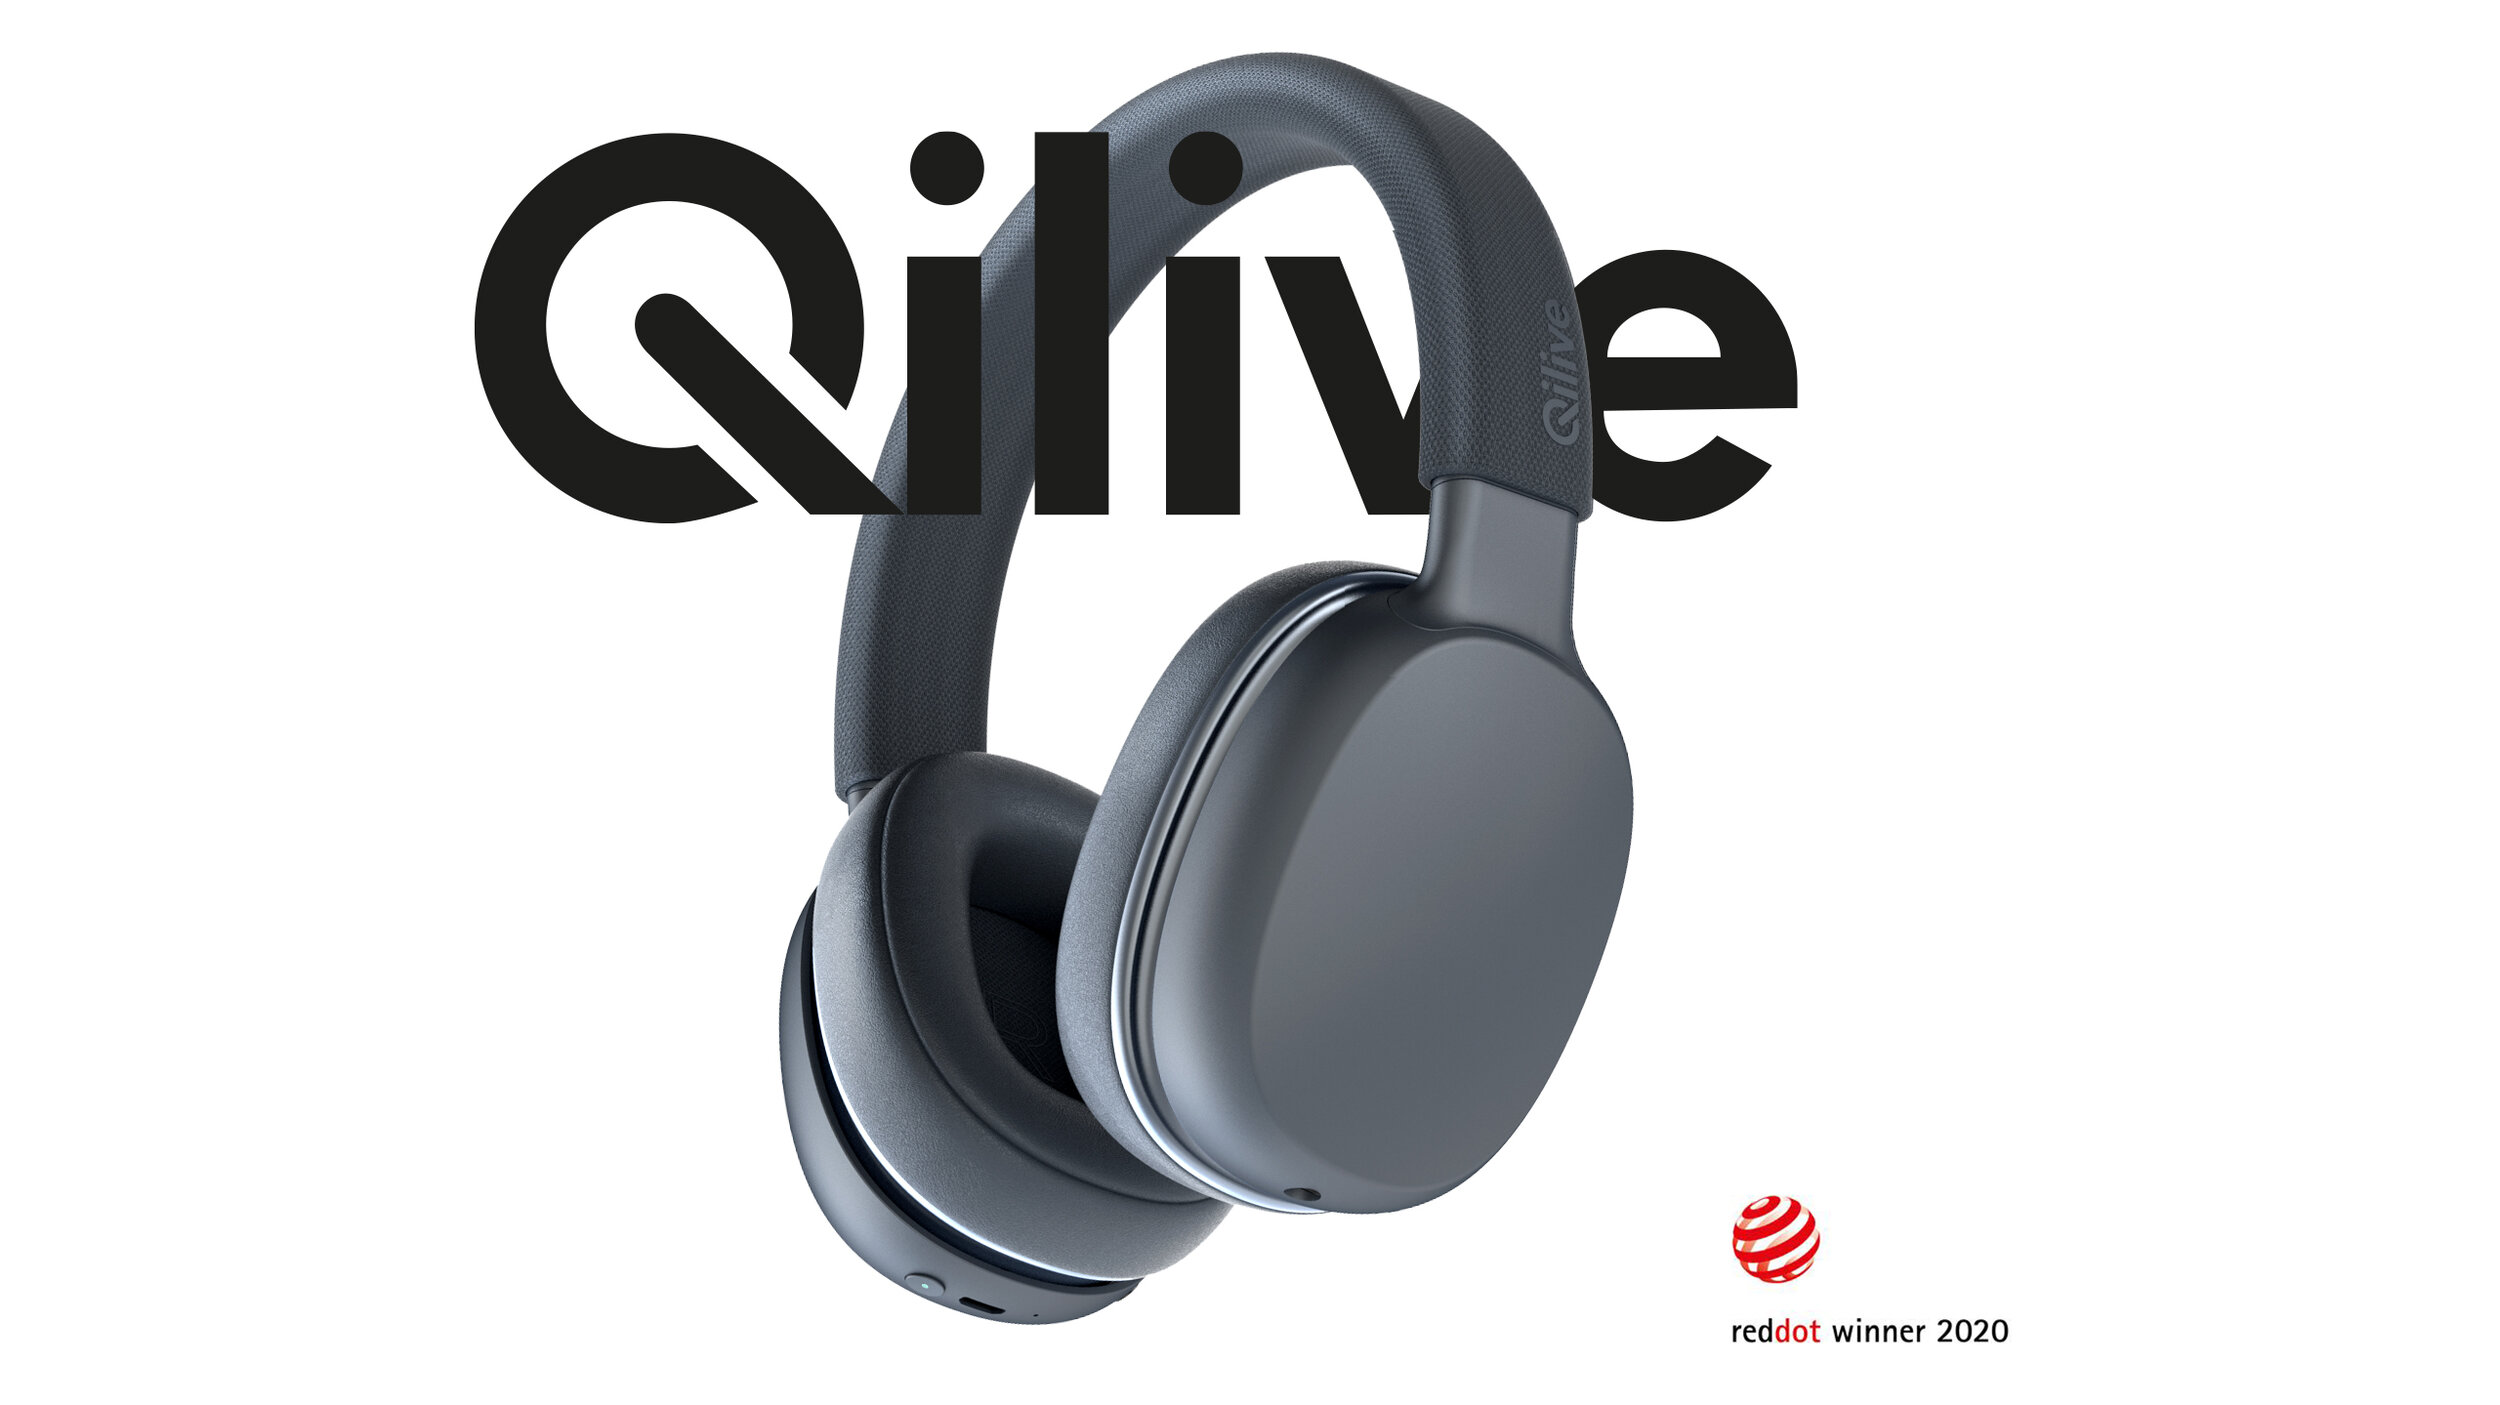 Casque réducteur de bruit — Qilive | Electroménager & High Tech by Auchan